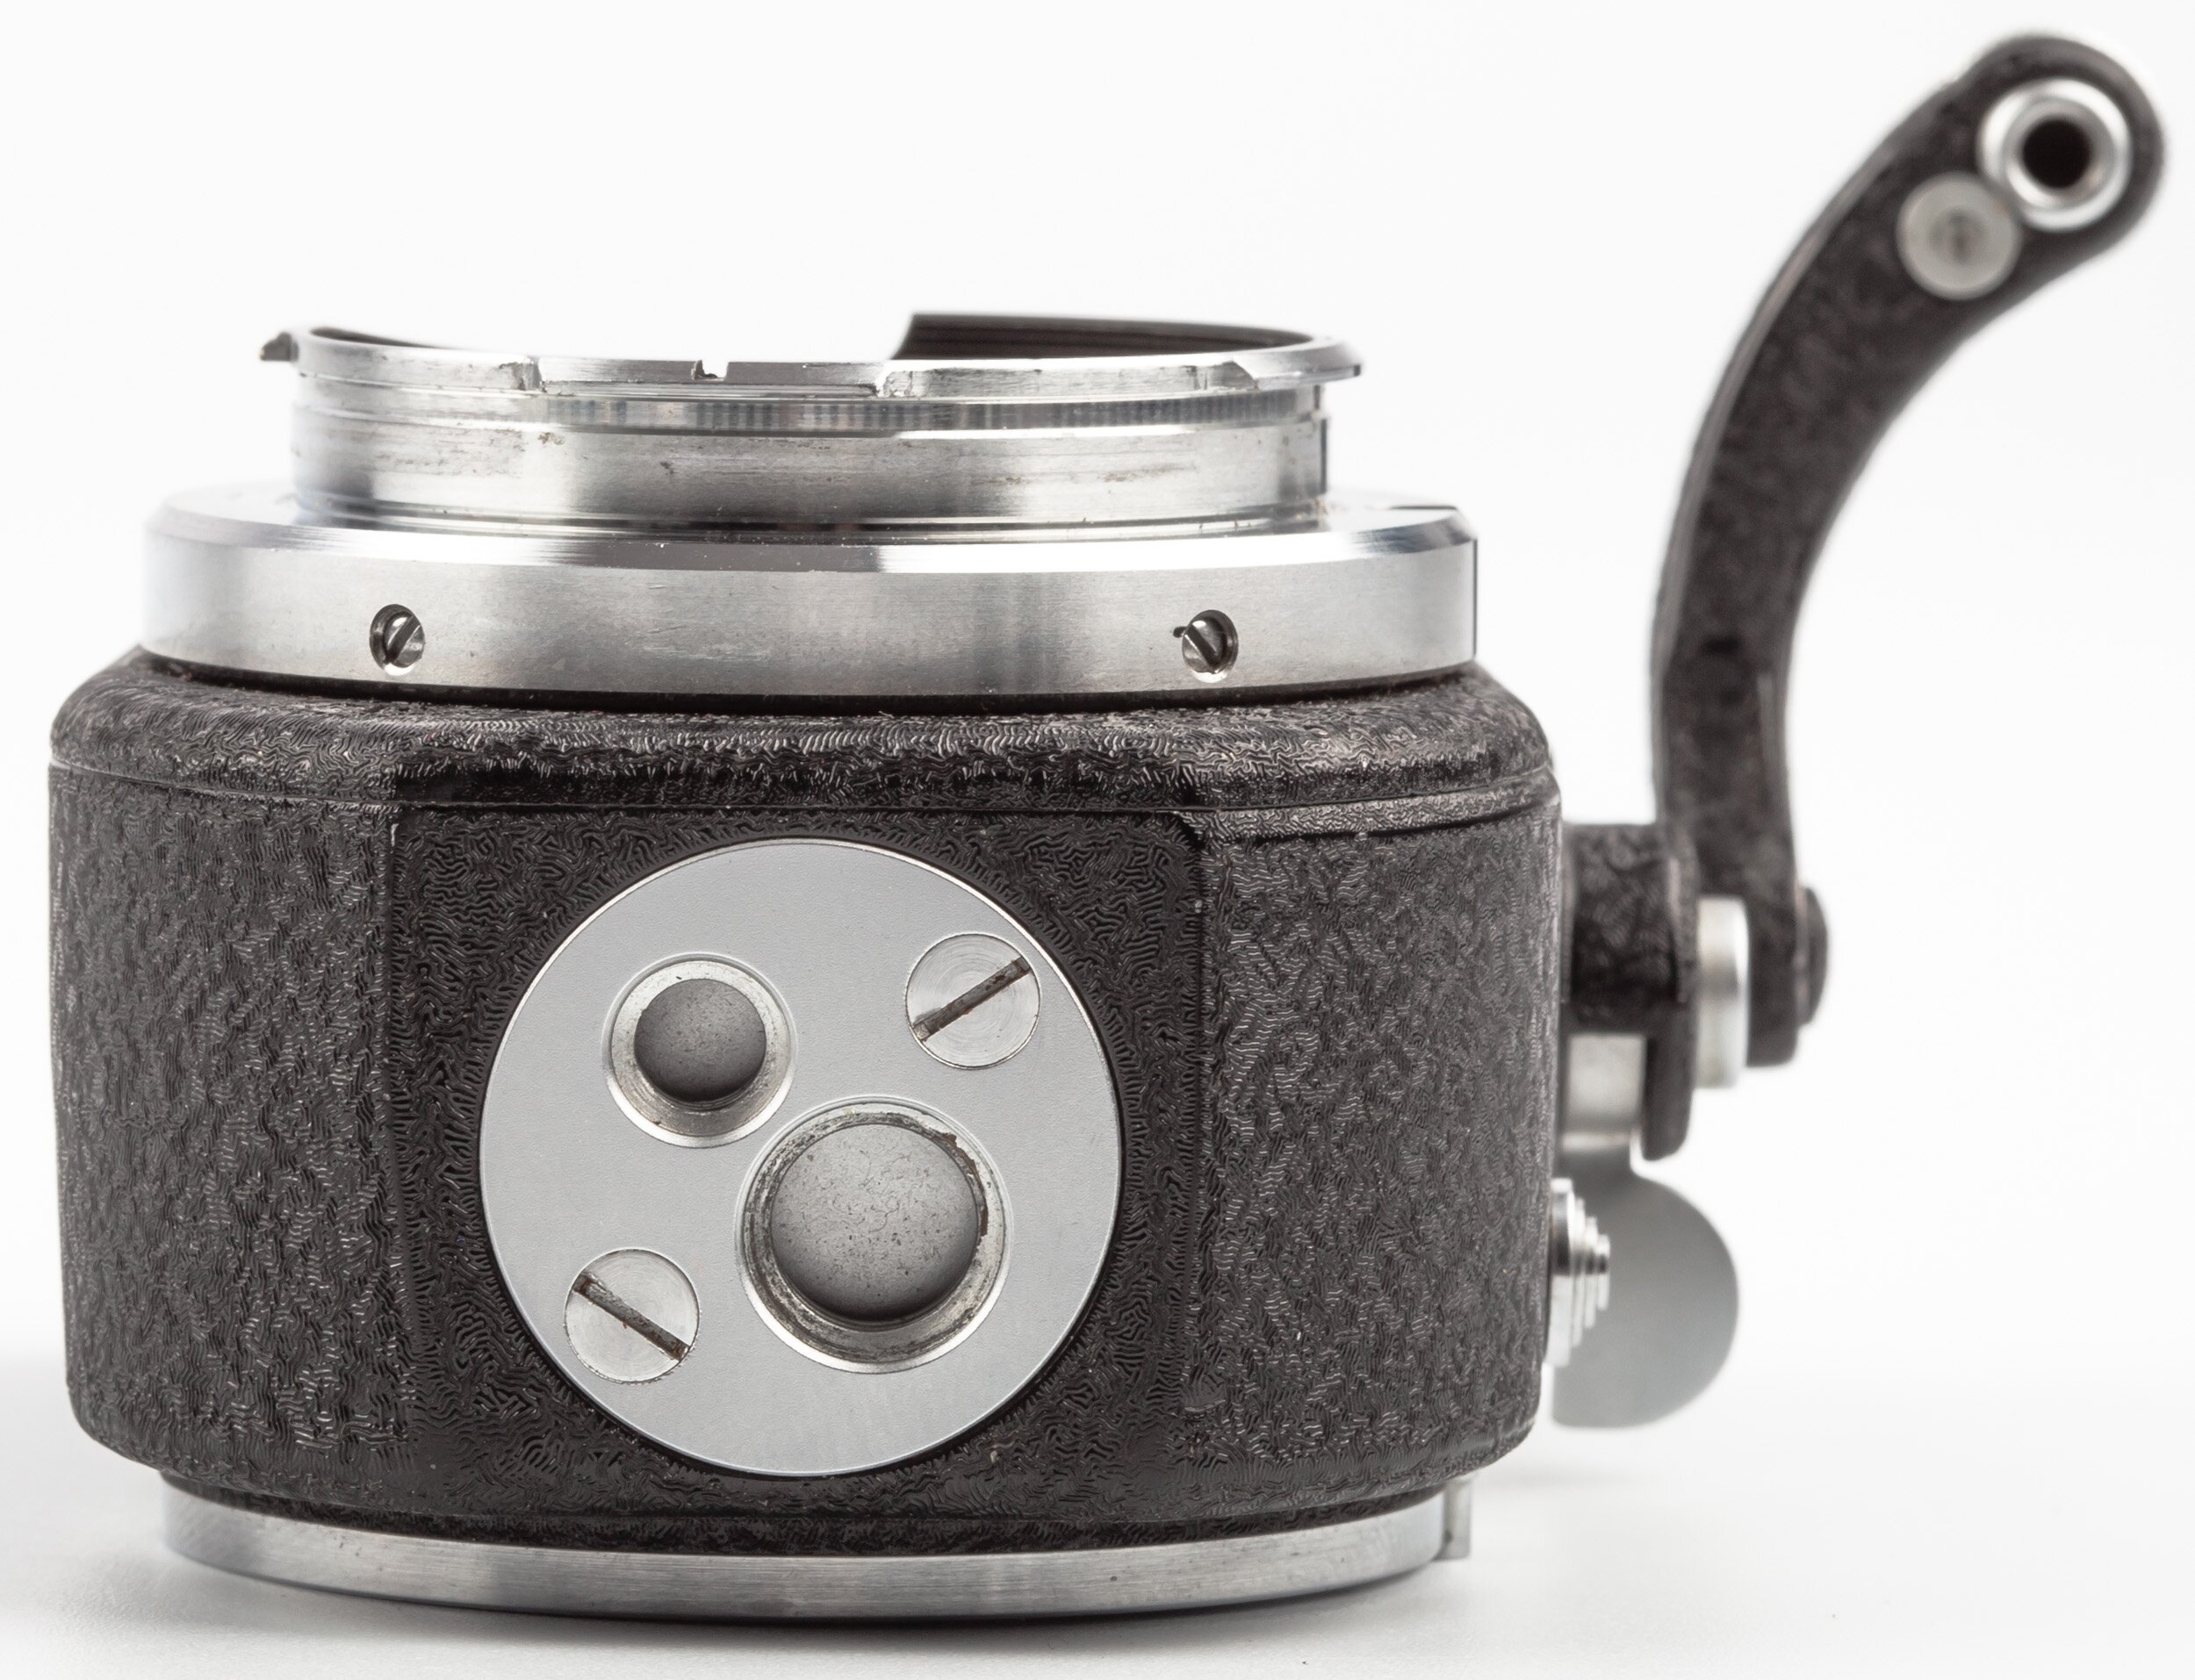 Leica Visoflex II with OTXBO